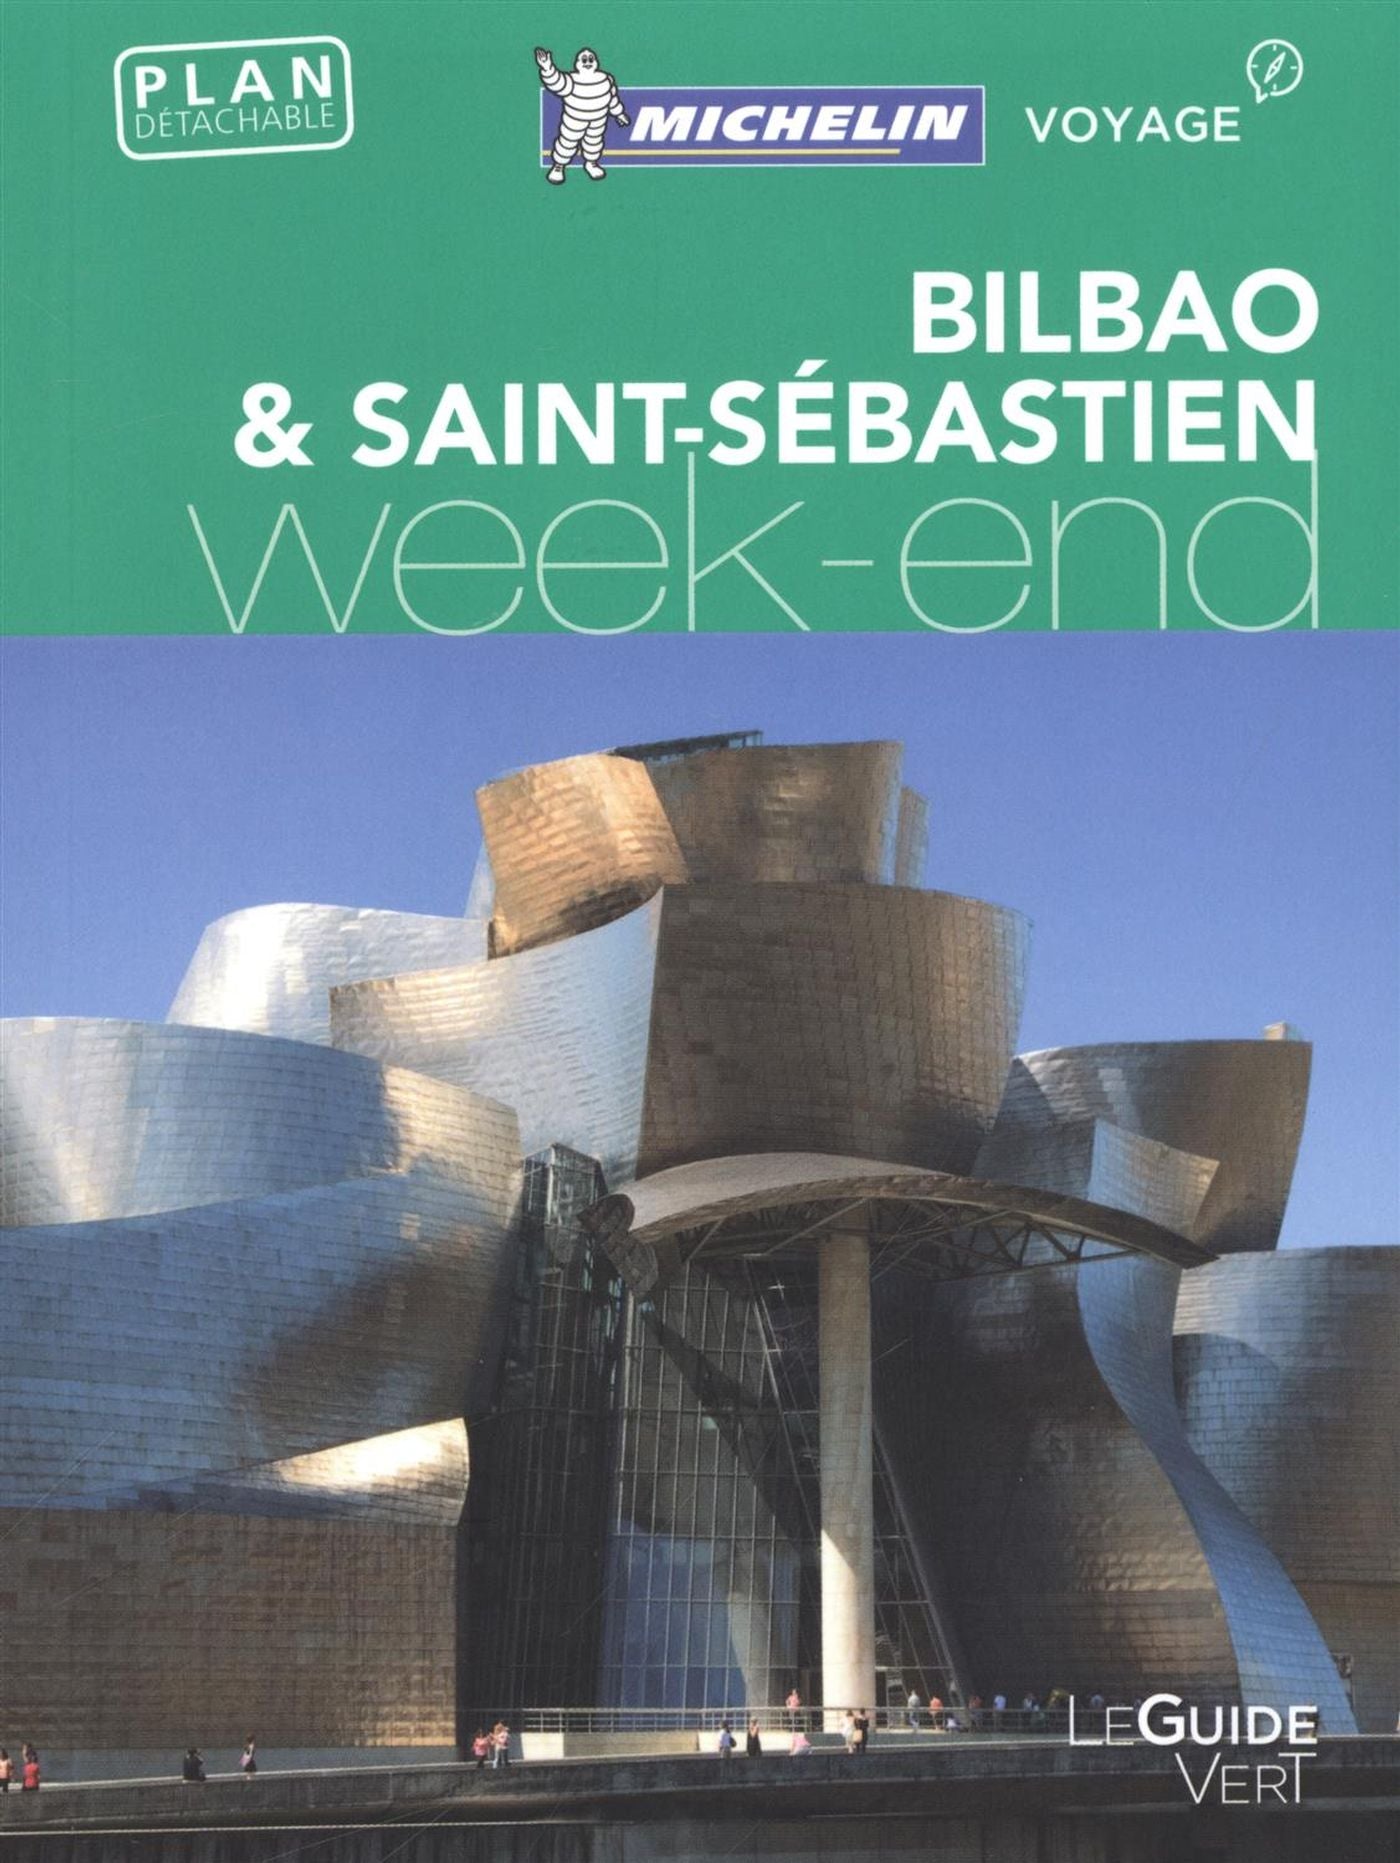 Guide vert Week-end : Bilbao & Saint-Sébastien